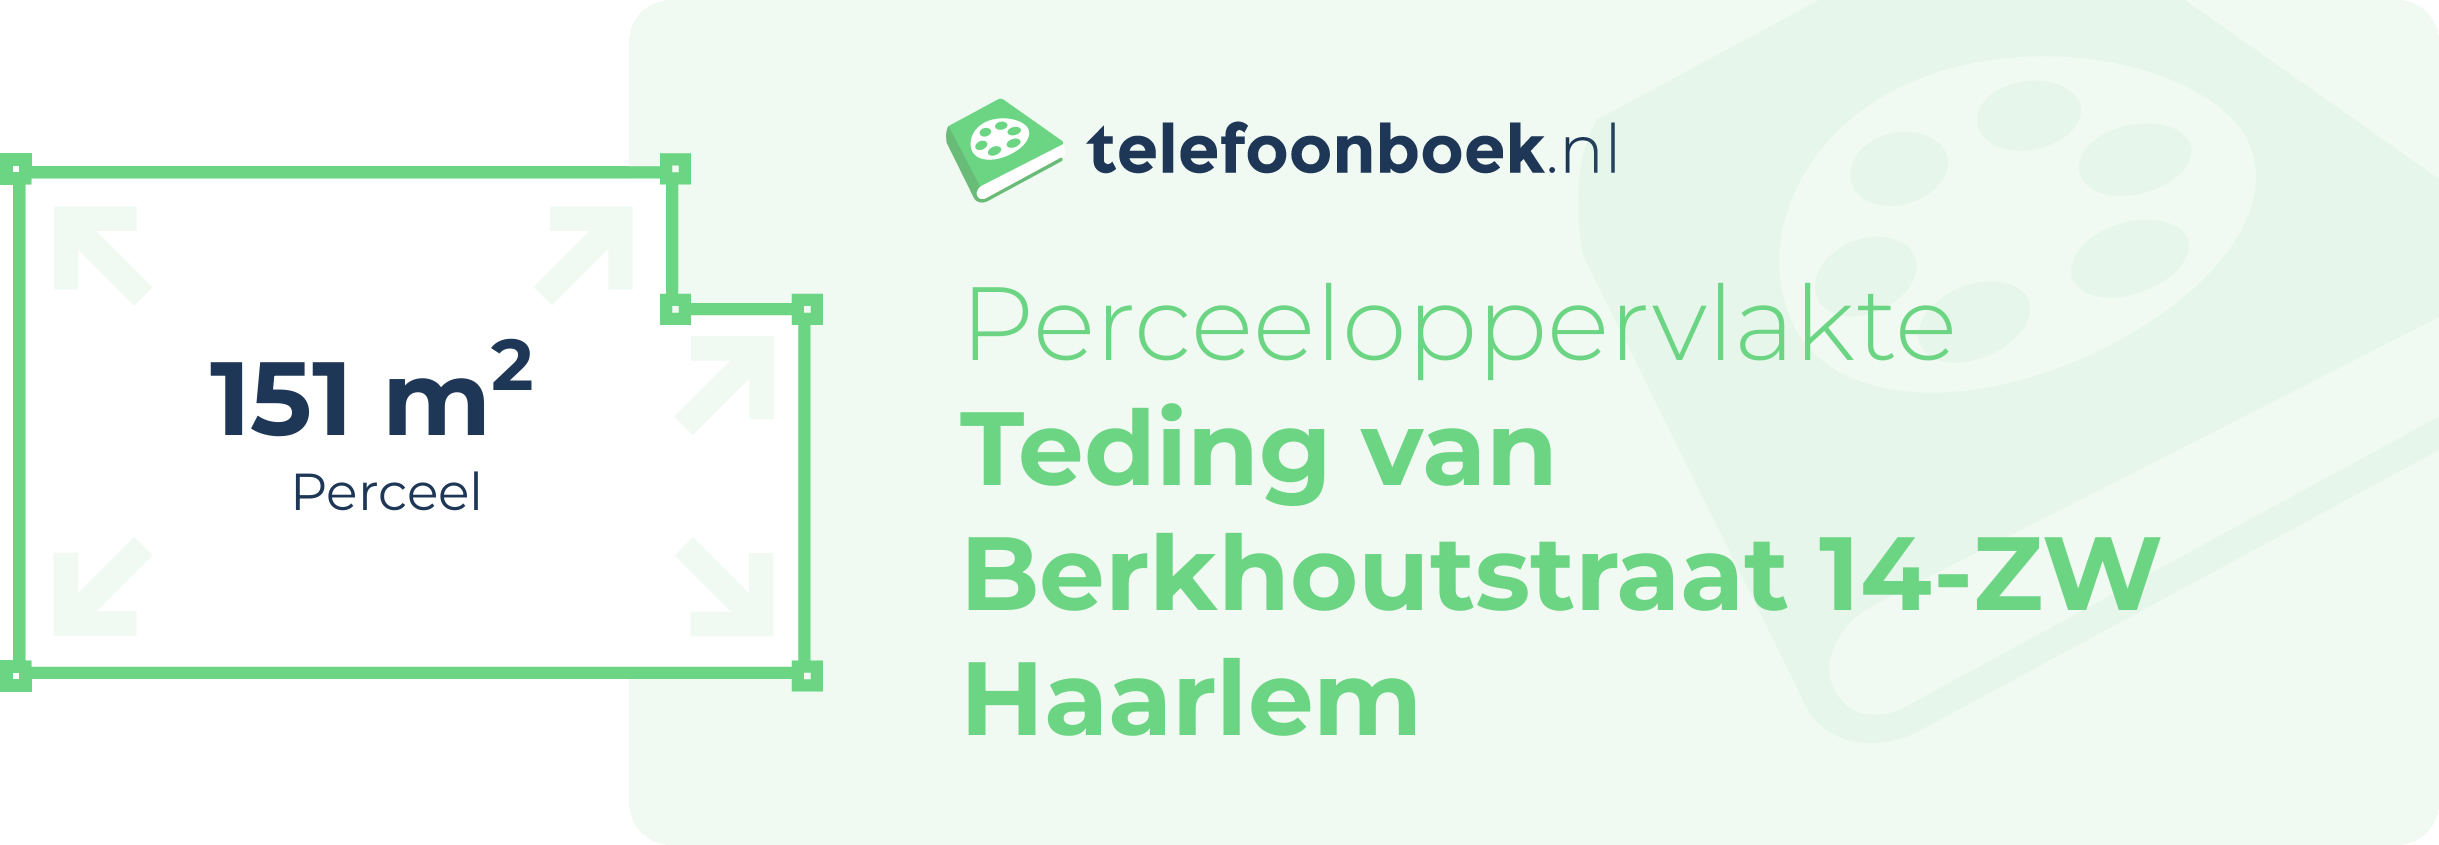 Perceeloppervlakte Teding Van Berkhoutstraat 14-ZW Haarlem